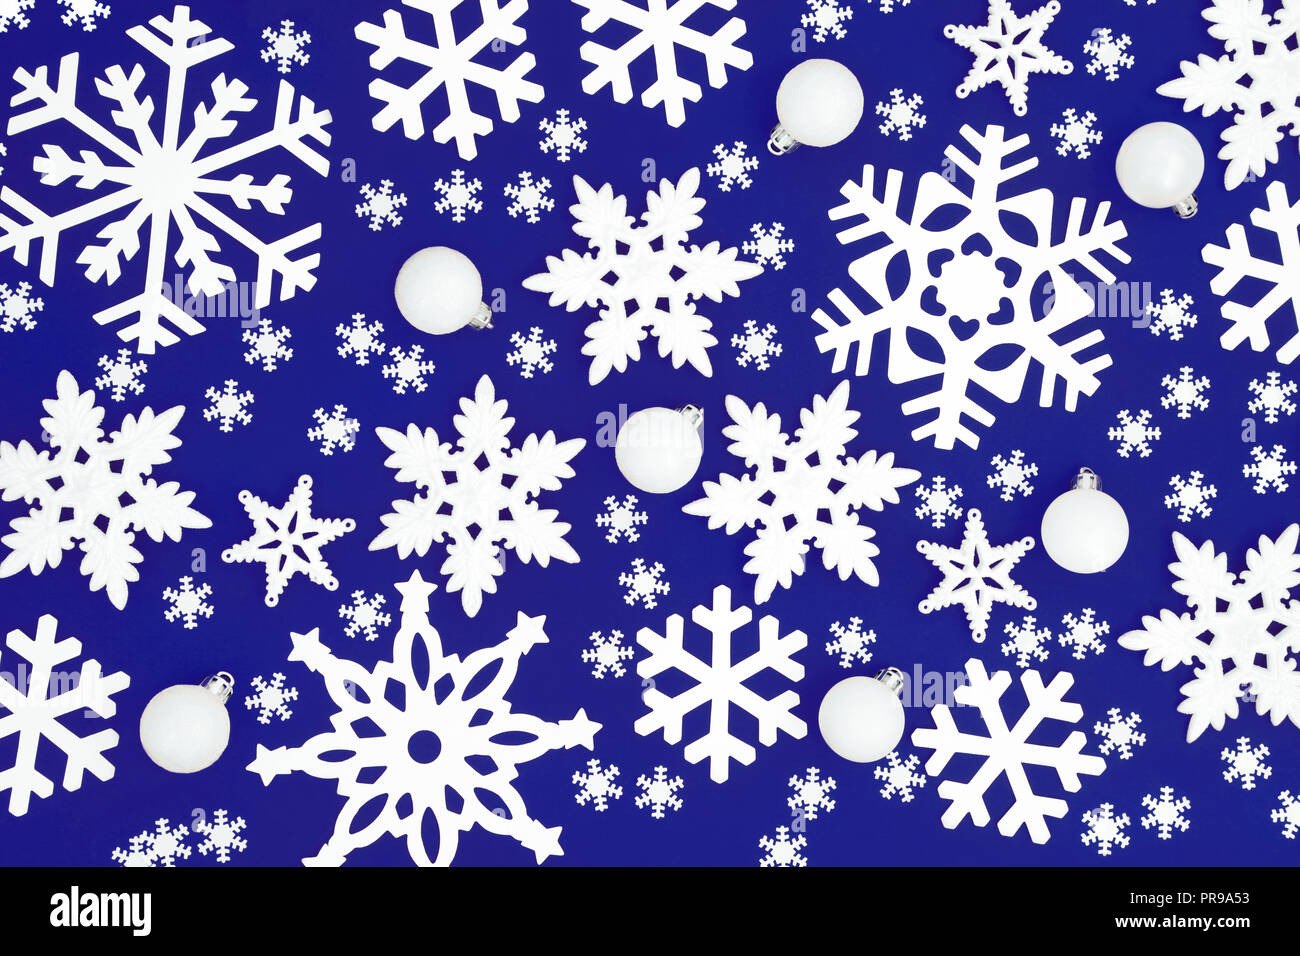 Flocon de neige de Noël et décorations formant une boule sur fond abstrait rouge. Carte de vœux de Noël traditionnel pour les fêtes. Banque D'Images